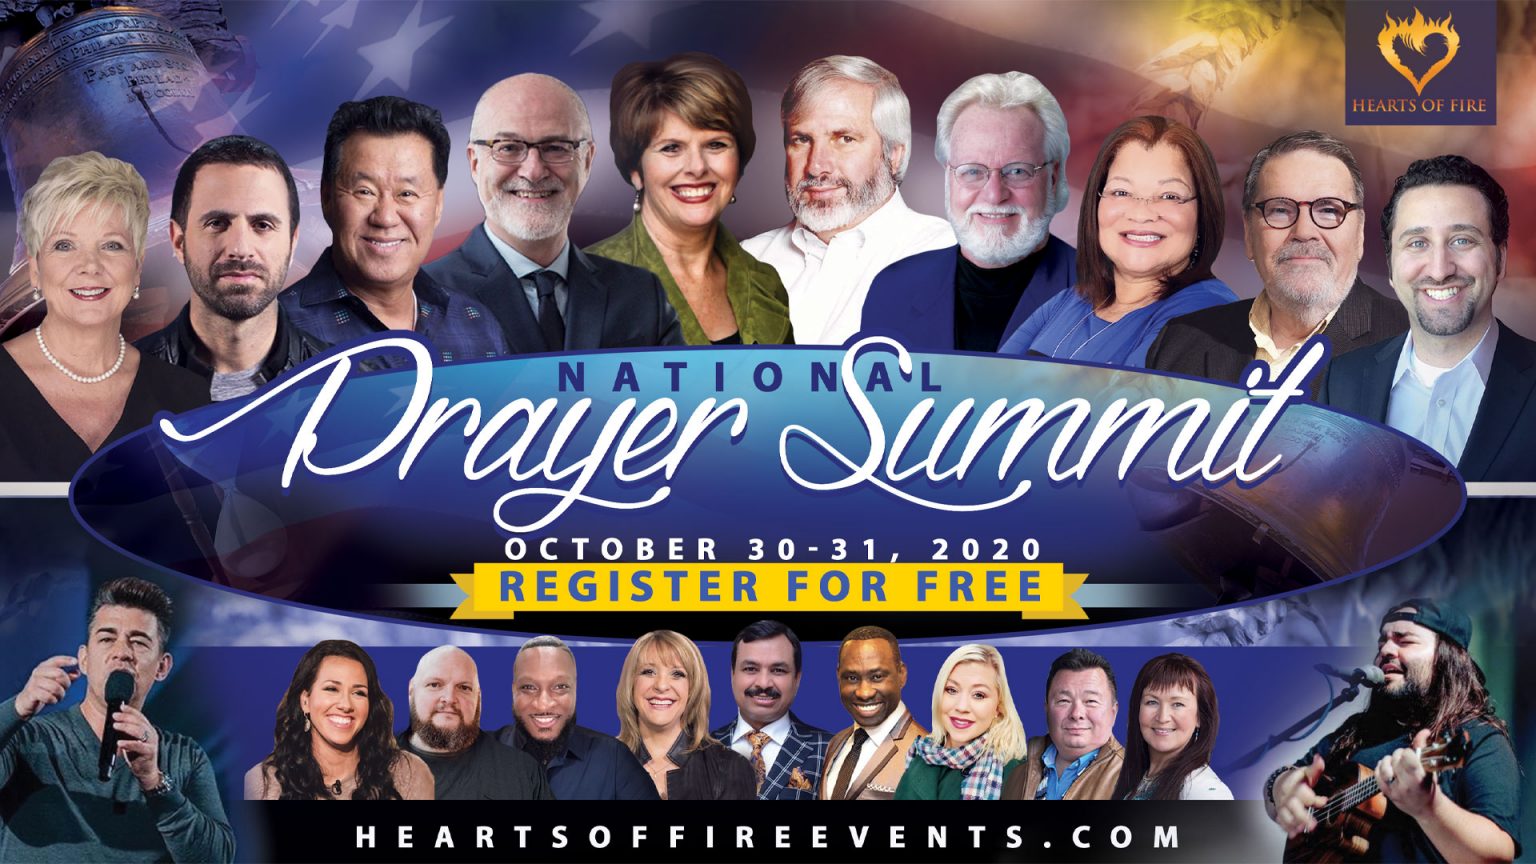 National Prayer Summit Heart of Fire Intl.